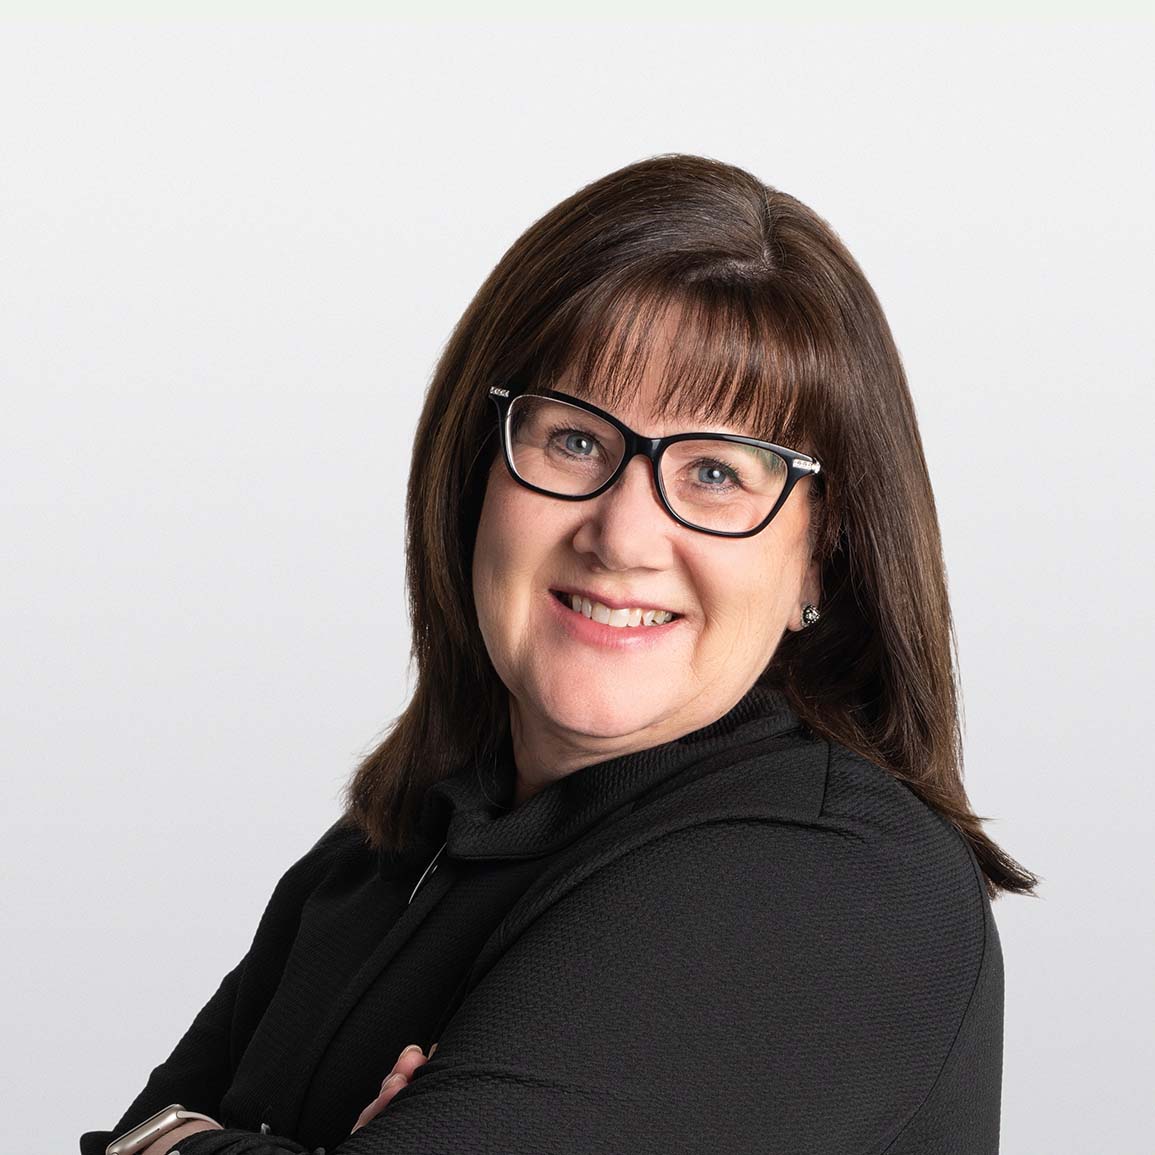 Image of Charlene Cummings senior financial advisor on white background